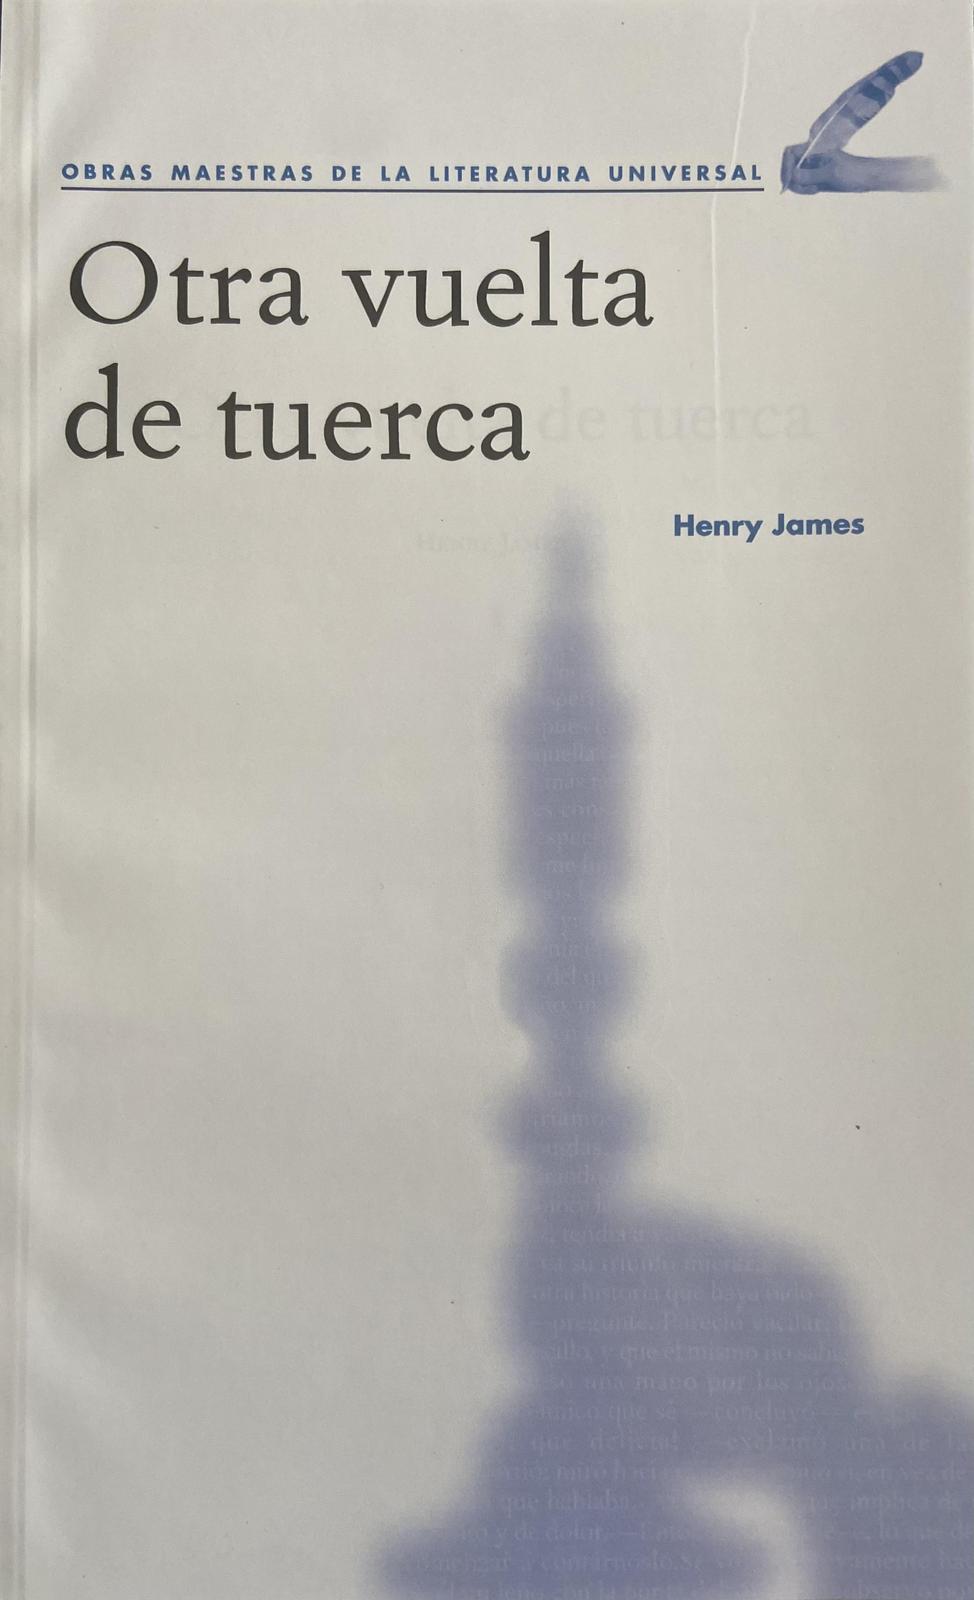 Henry James: Otra vuelta de tuerca (Spanish language, 2020, Agencia Promotora de Publicaciones, S.A. de C.V.)